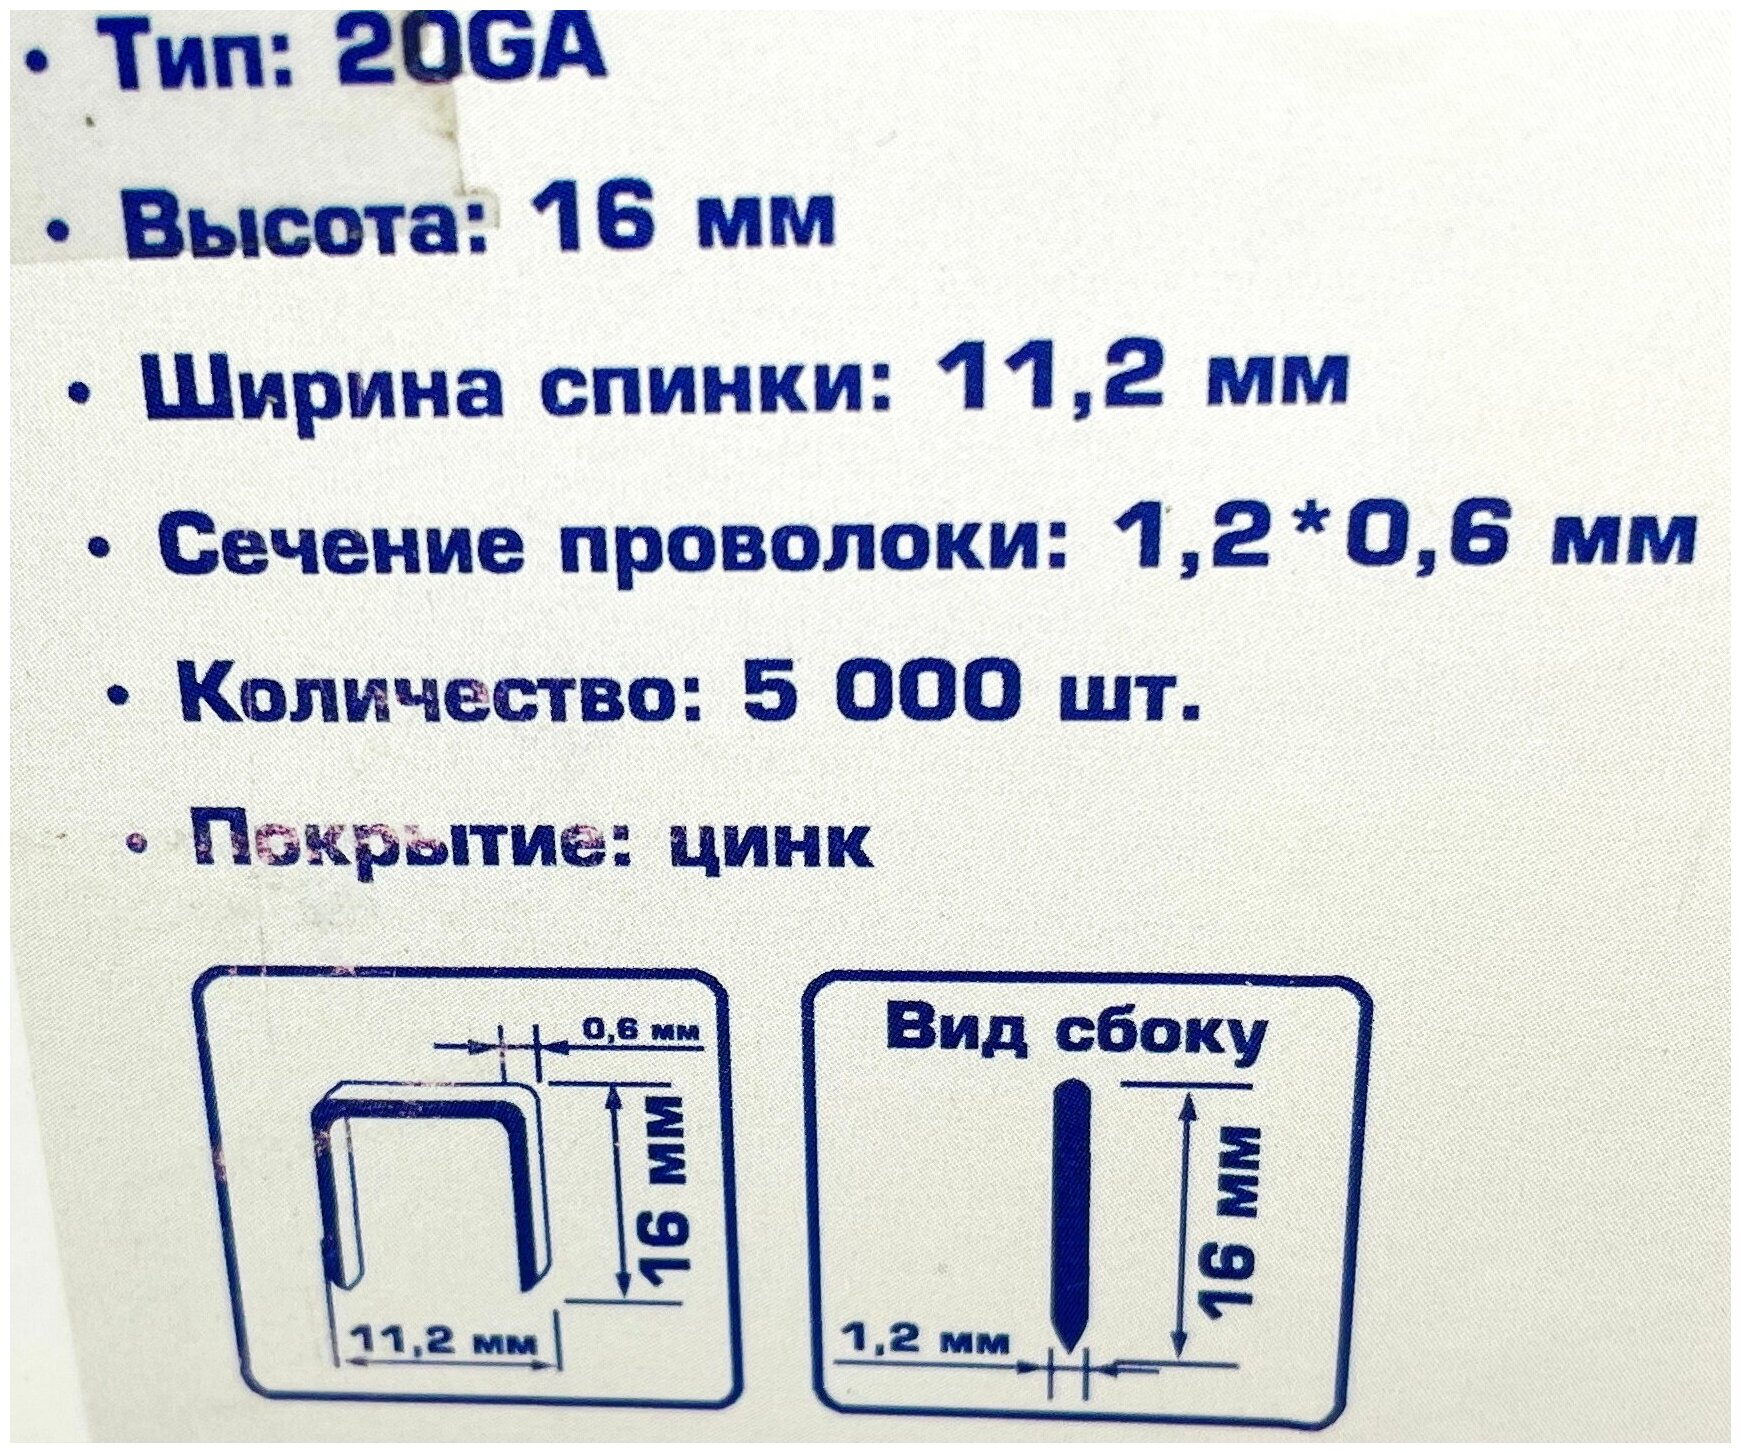 Скоба для степлера PEGAS 1016, тип 53 (20GA), 16мм, коробка 5000шт. - фотография № 5